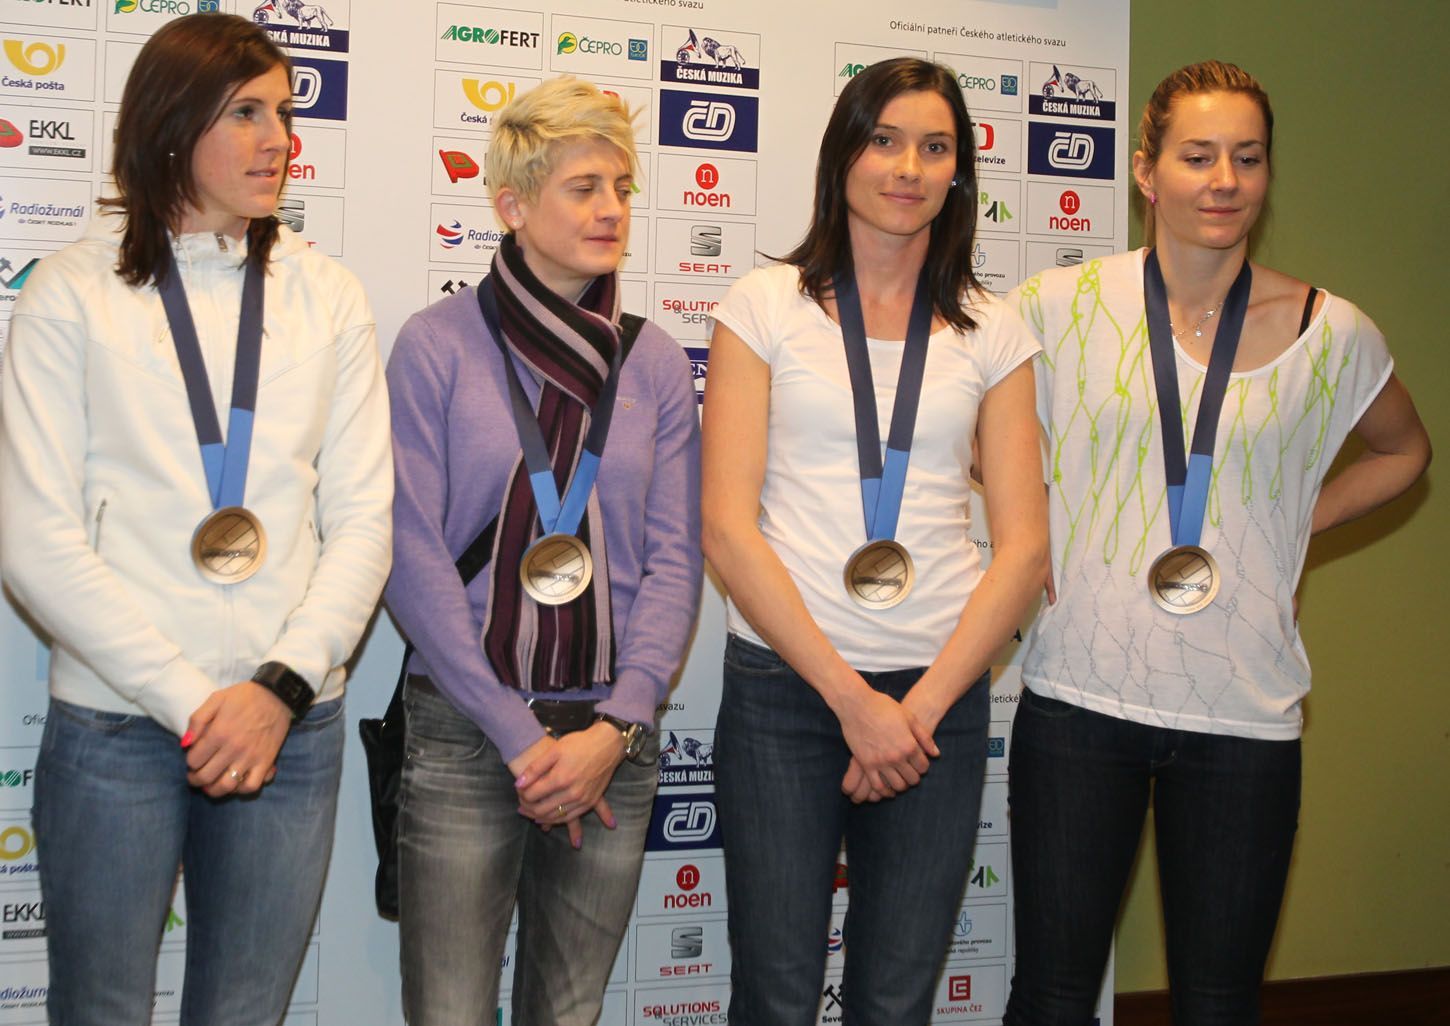 Přílet atletůz HME v Göteborgu: Zuzana Hejnová, Lenka Masná, Jitka Bartoníčková a Denisa Rosolová